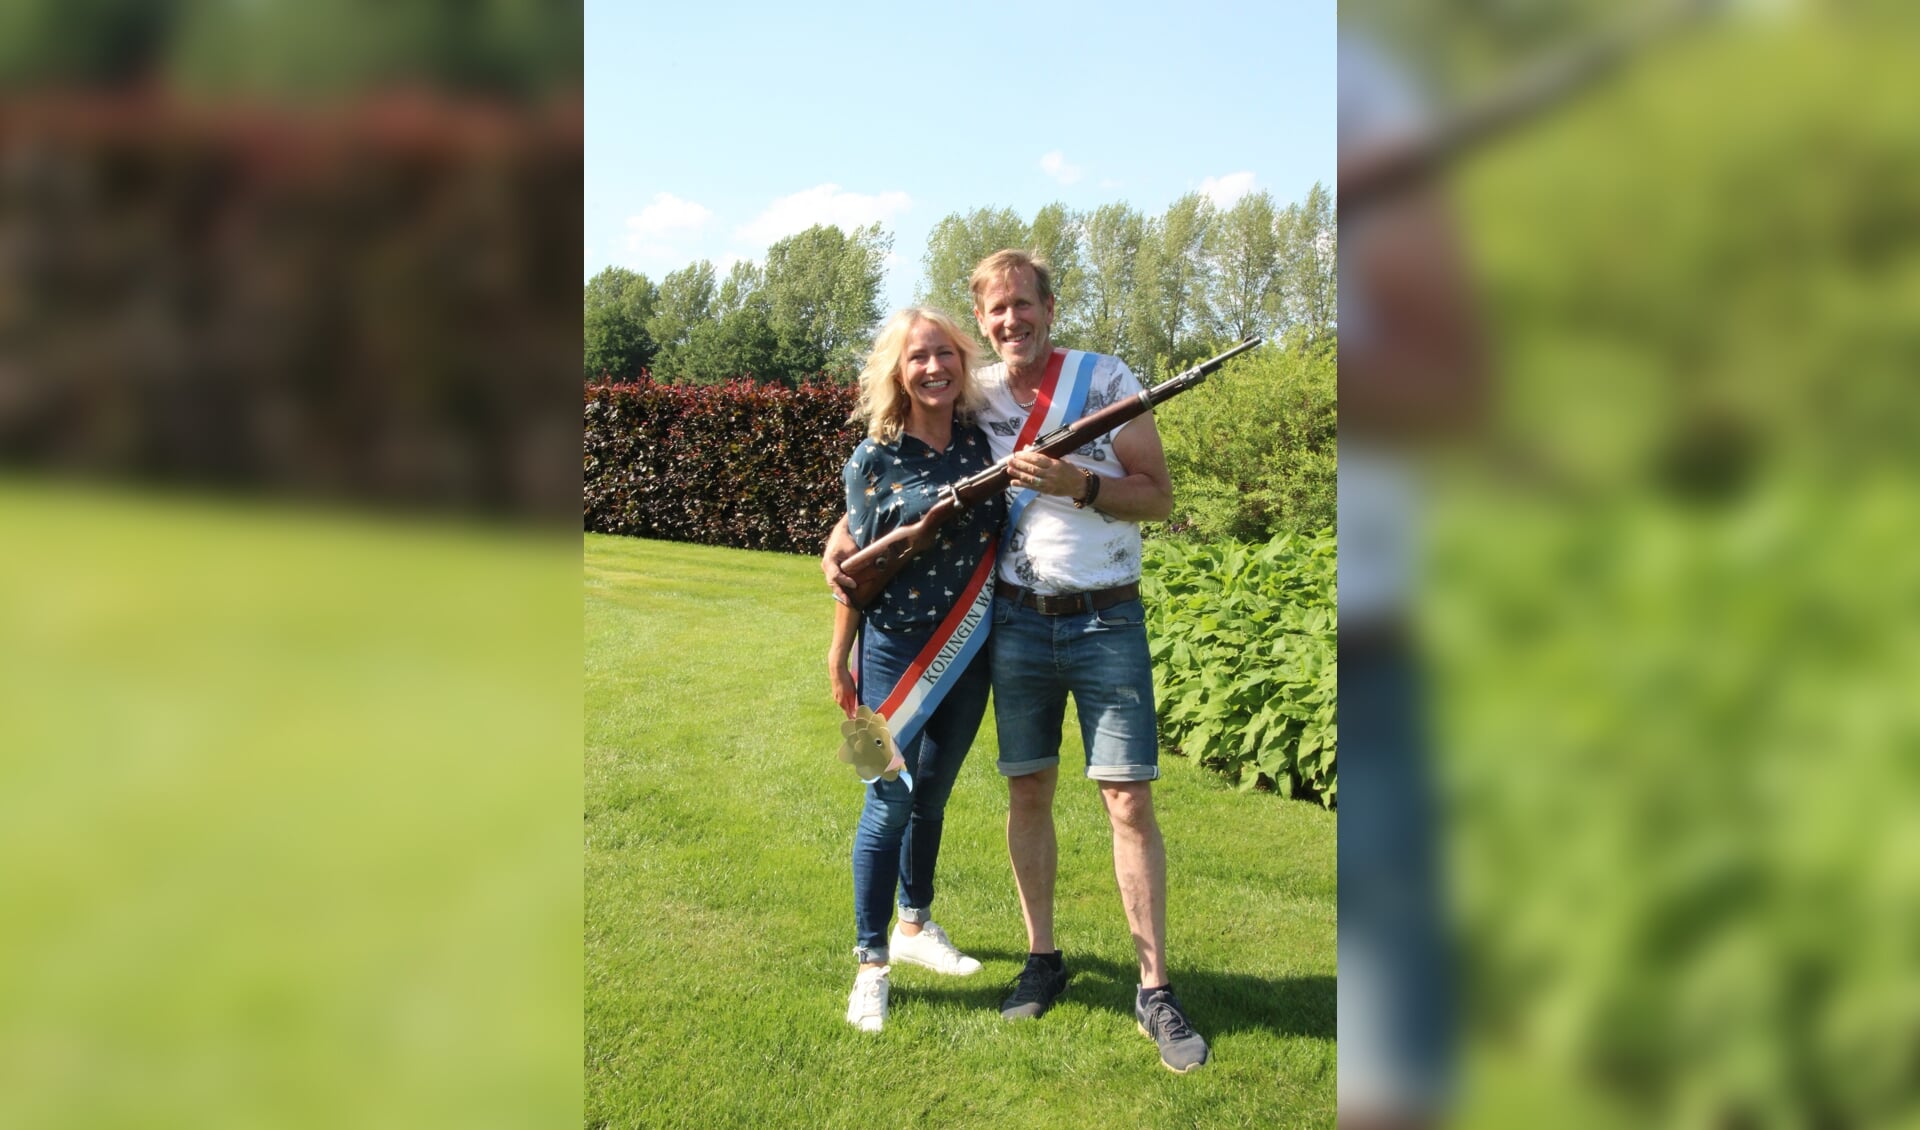 Koning van de Wassinkbrink 2022 Maarten Wolvetang en zijn vriendin Gerdien Bloemendal. Foto: Corrie Janssen
